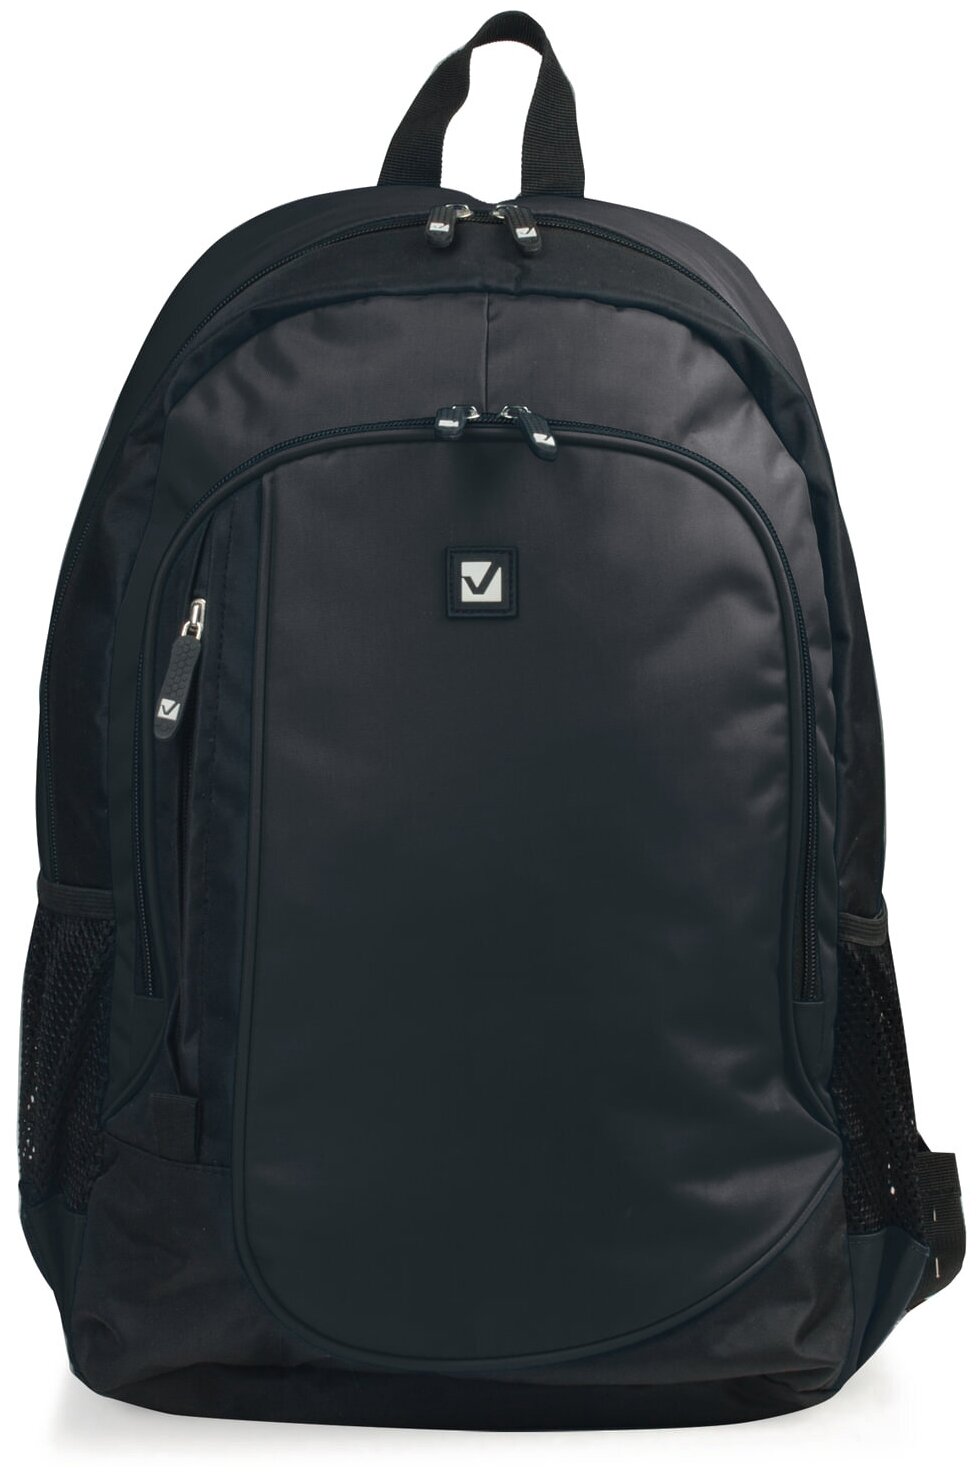 Рюкзак BRAUBERG DELTA универсальный, 2 отделения, Navigator, черный, 45х30х17 см, 225291